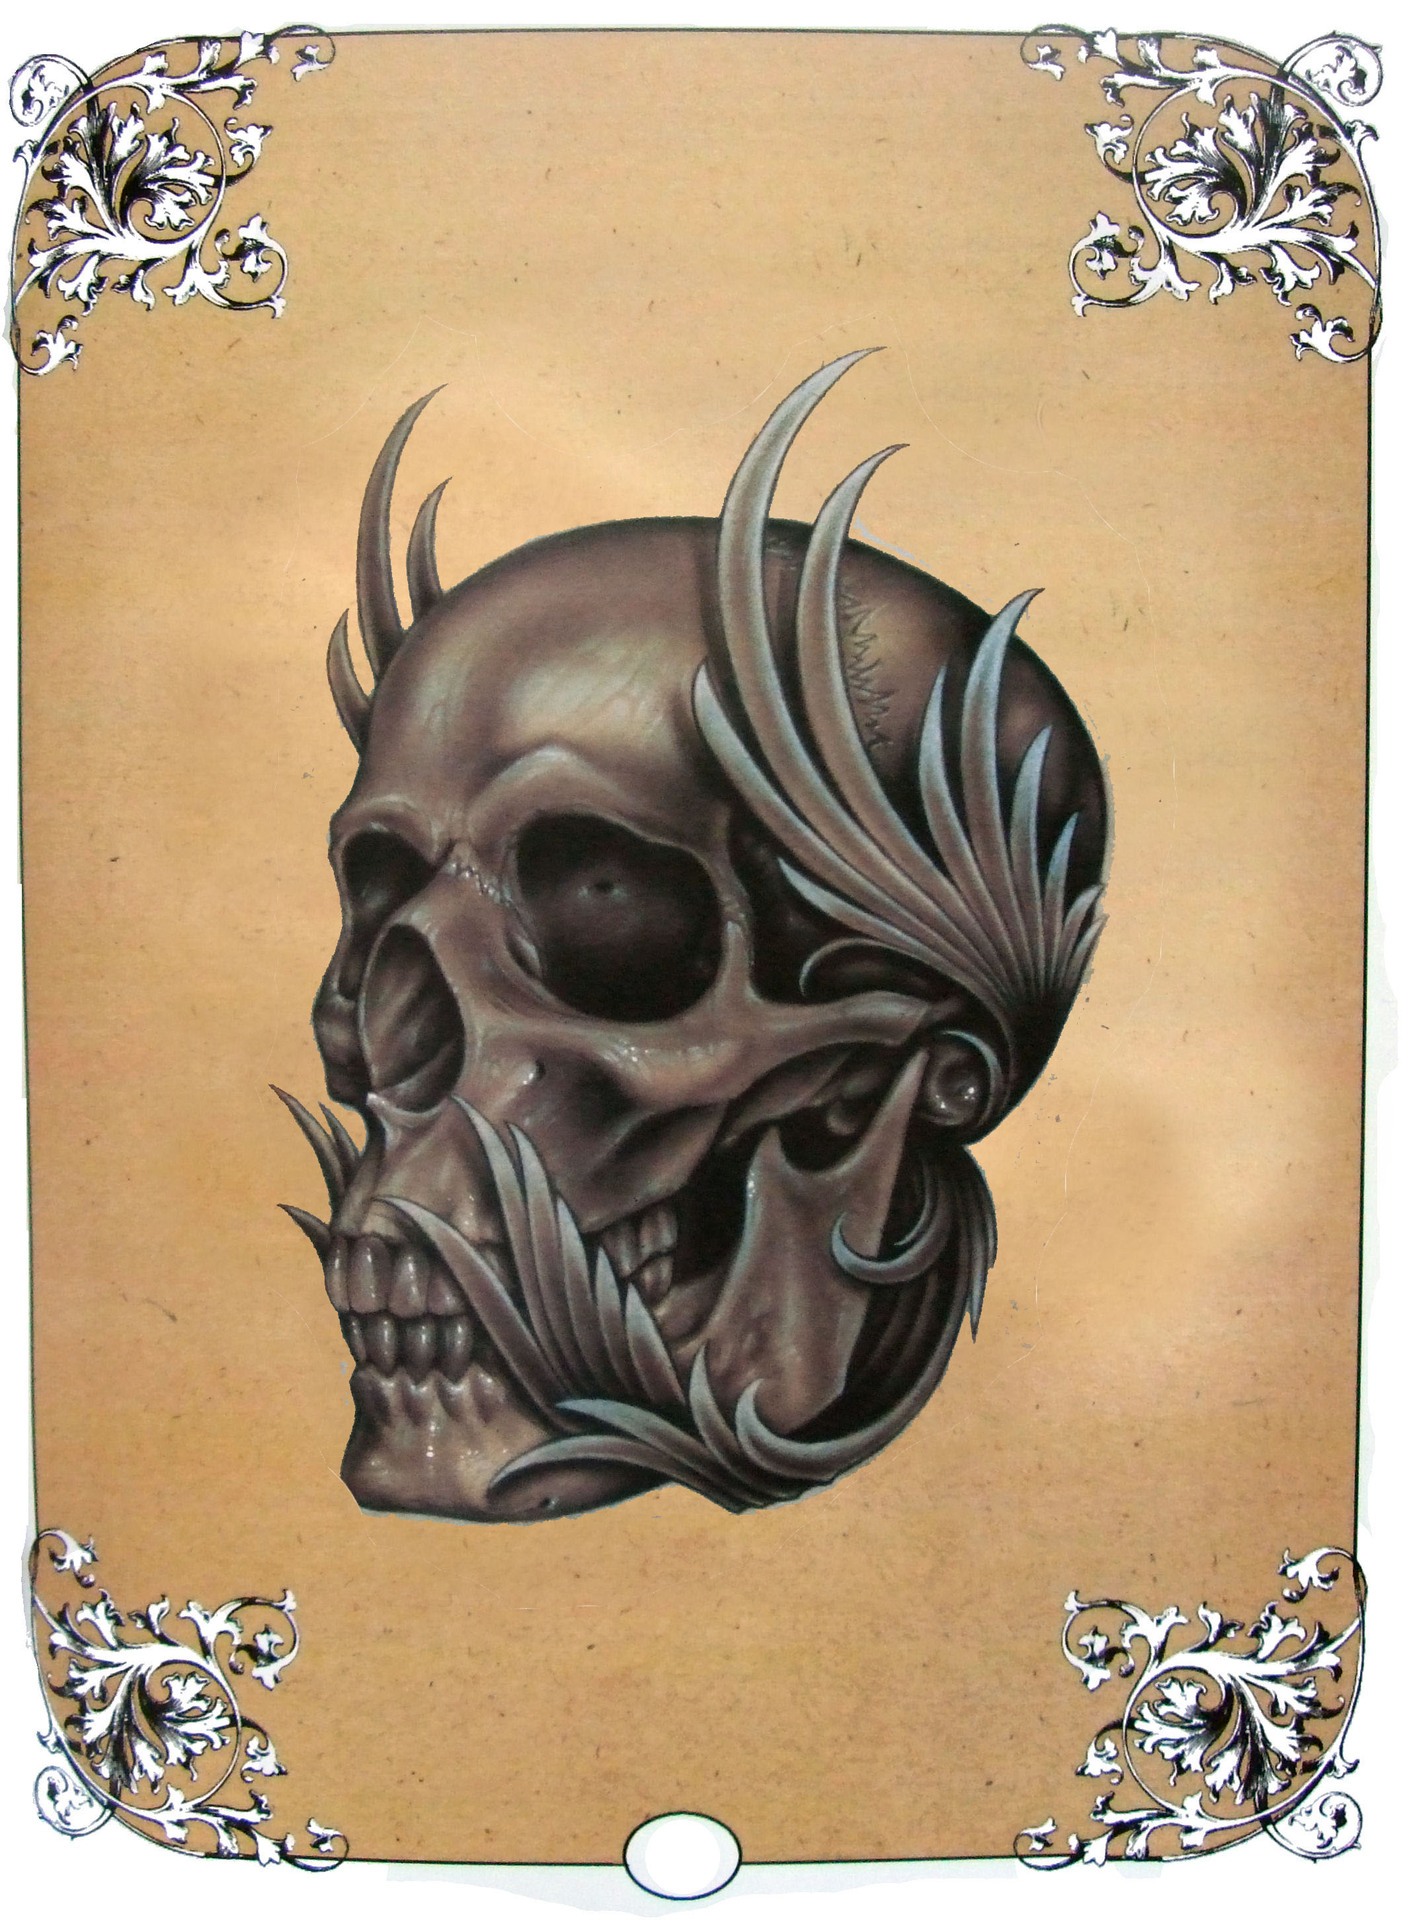 中龙纹身厂家直销死亡笔记纹身手稿图册 新手纹身骷髅